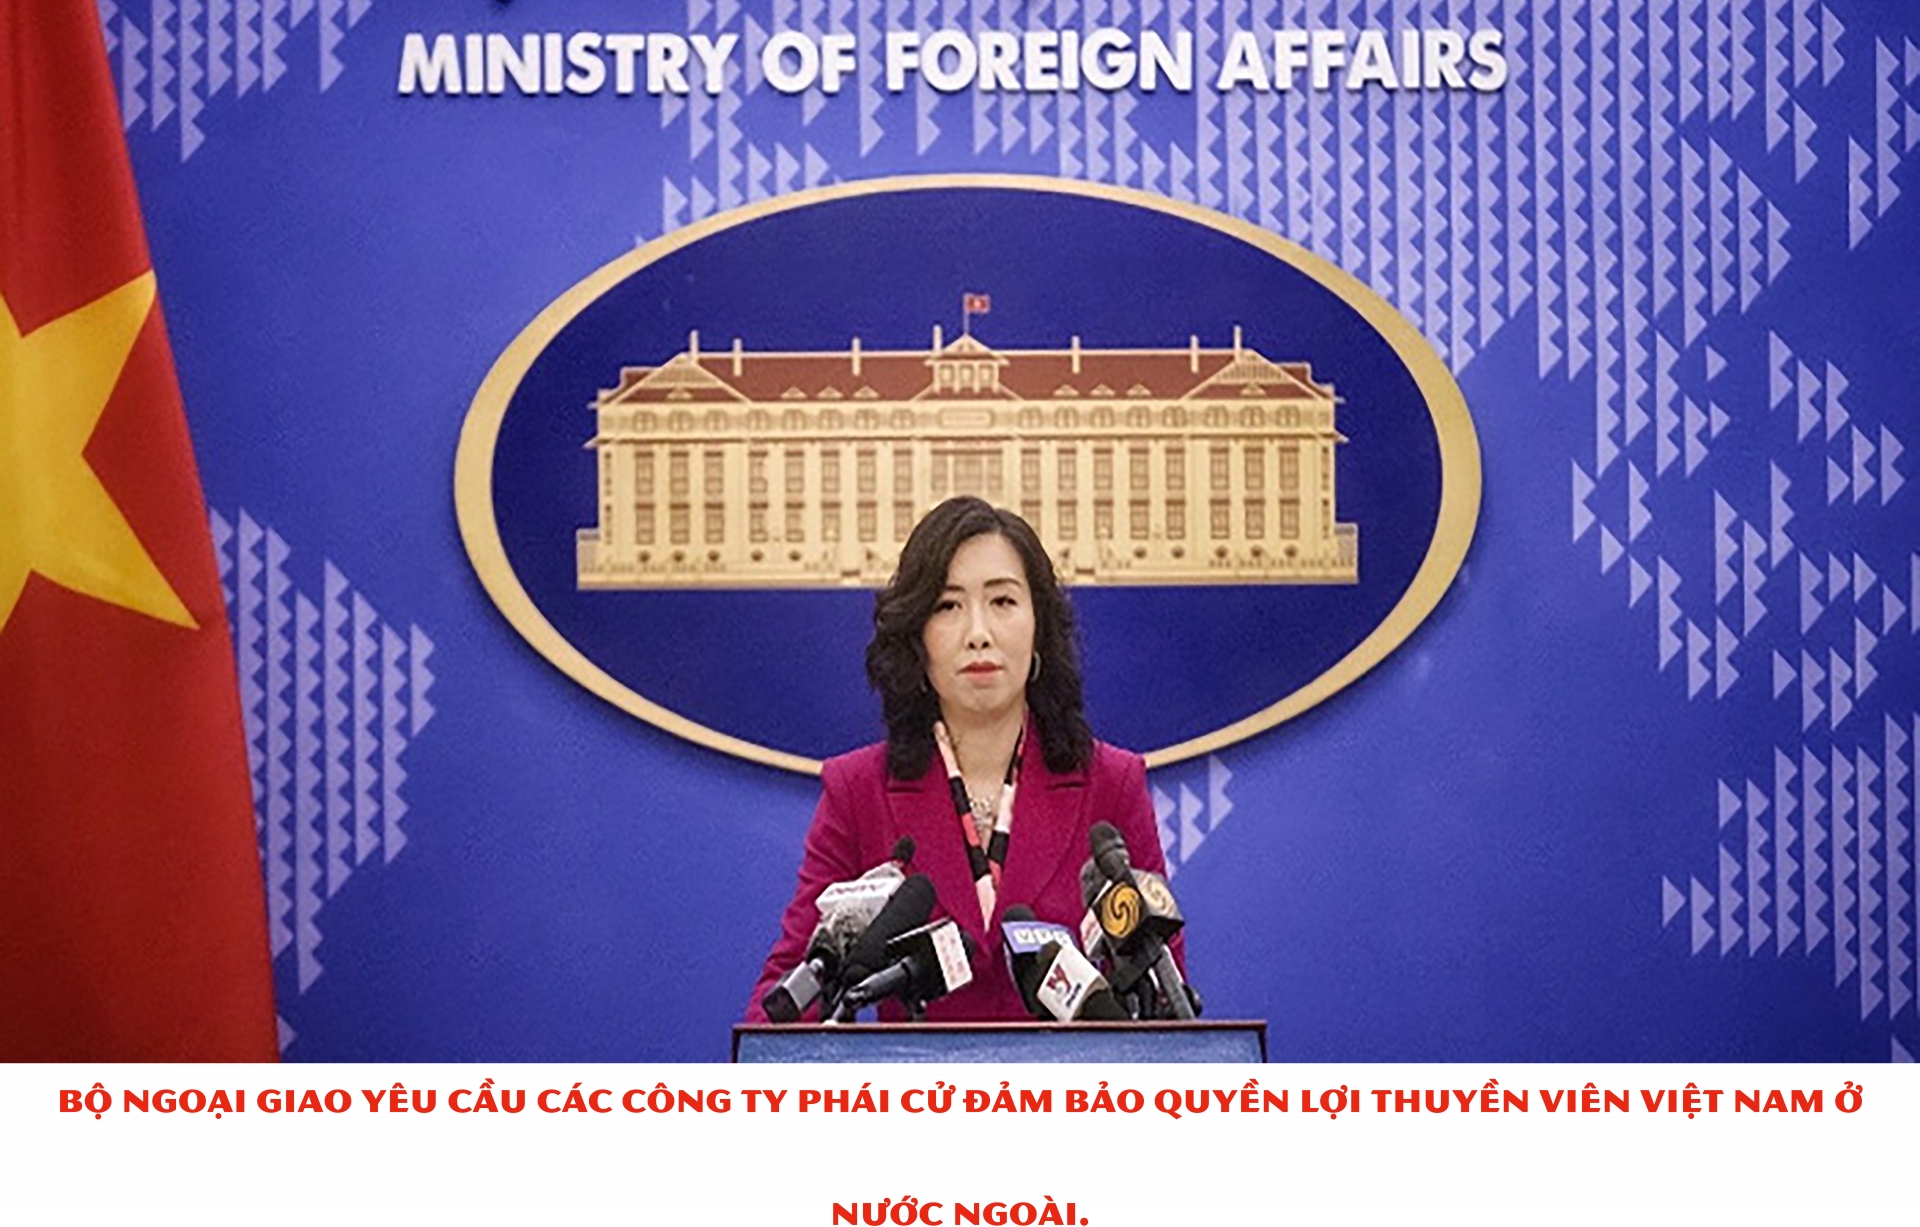 Bộ Ngoại giao yêu cầu các công ty phái cử đảm bảo quyền lợi thuyền viên Việt Nam